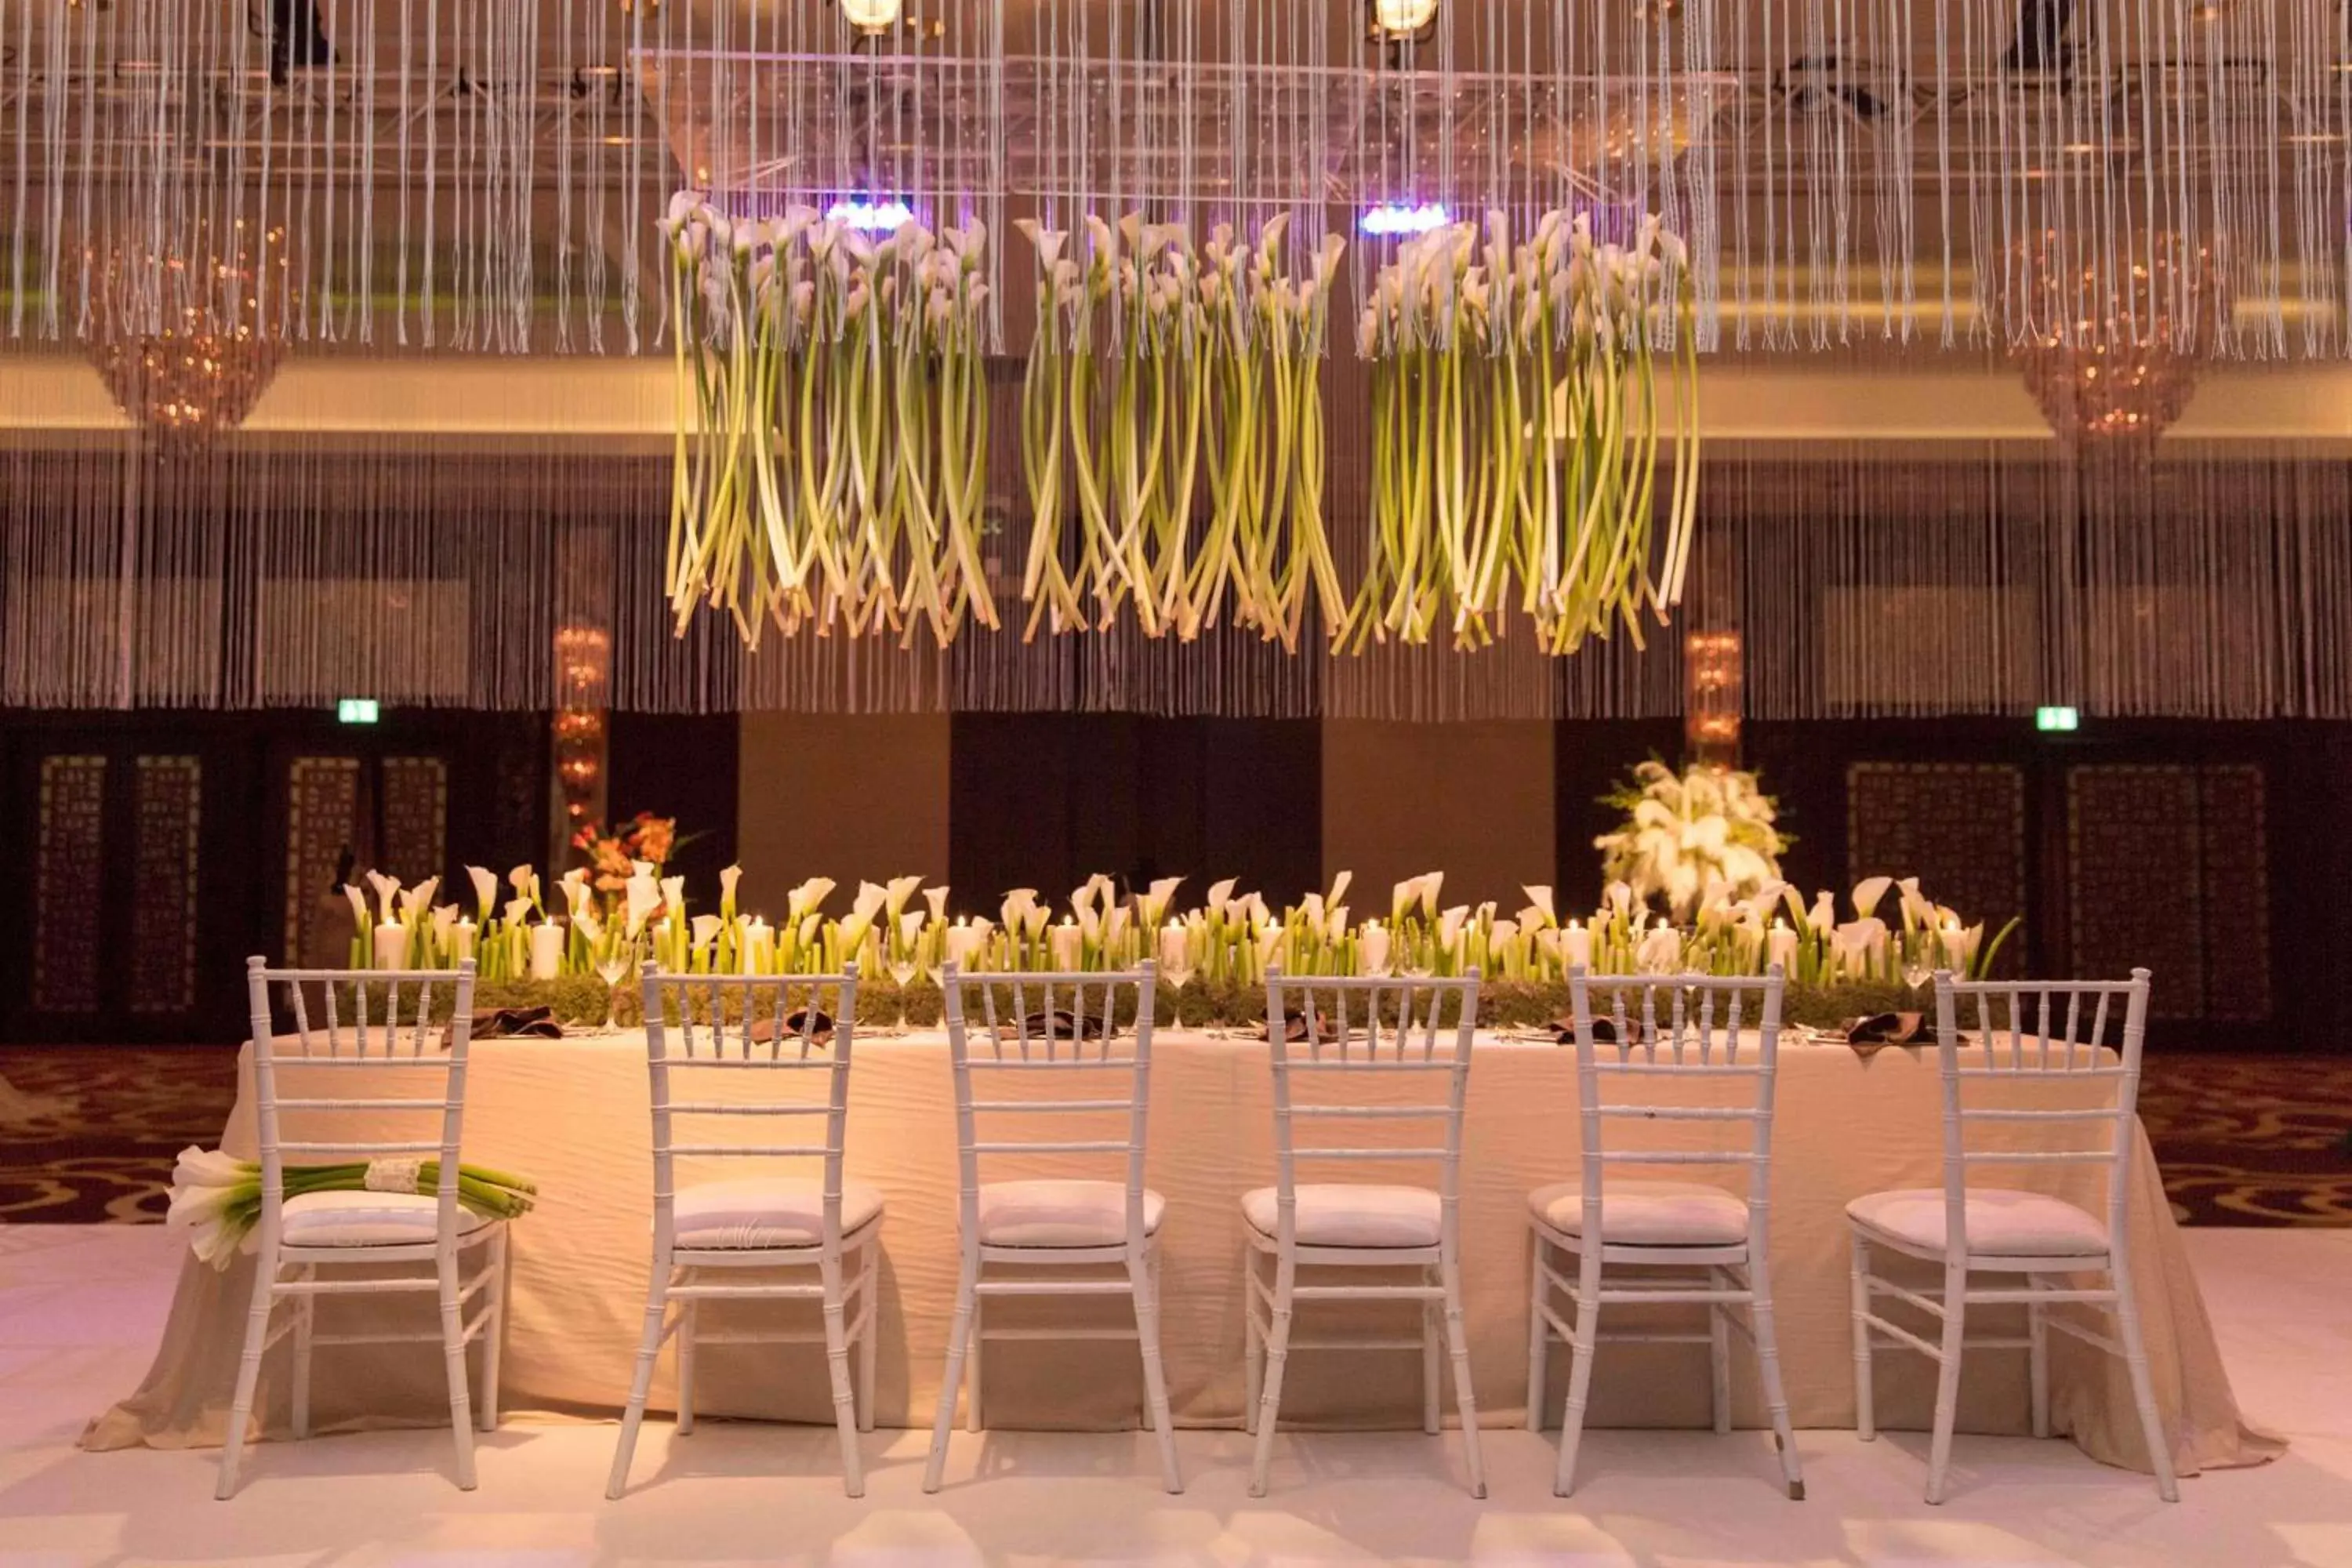 Meeting/conference room, Banquet Facilities in Conrad Dubai